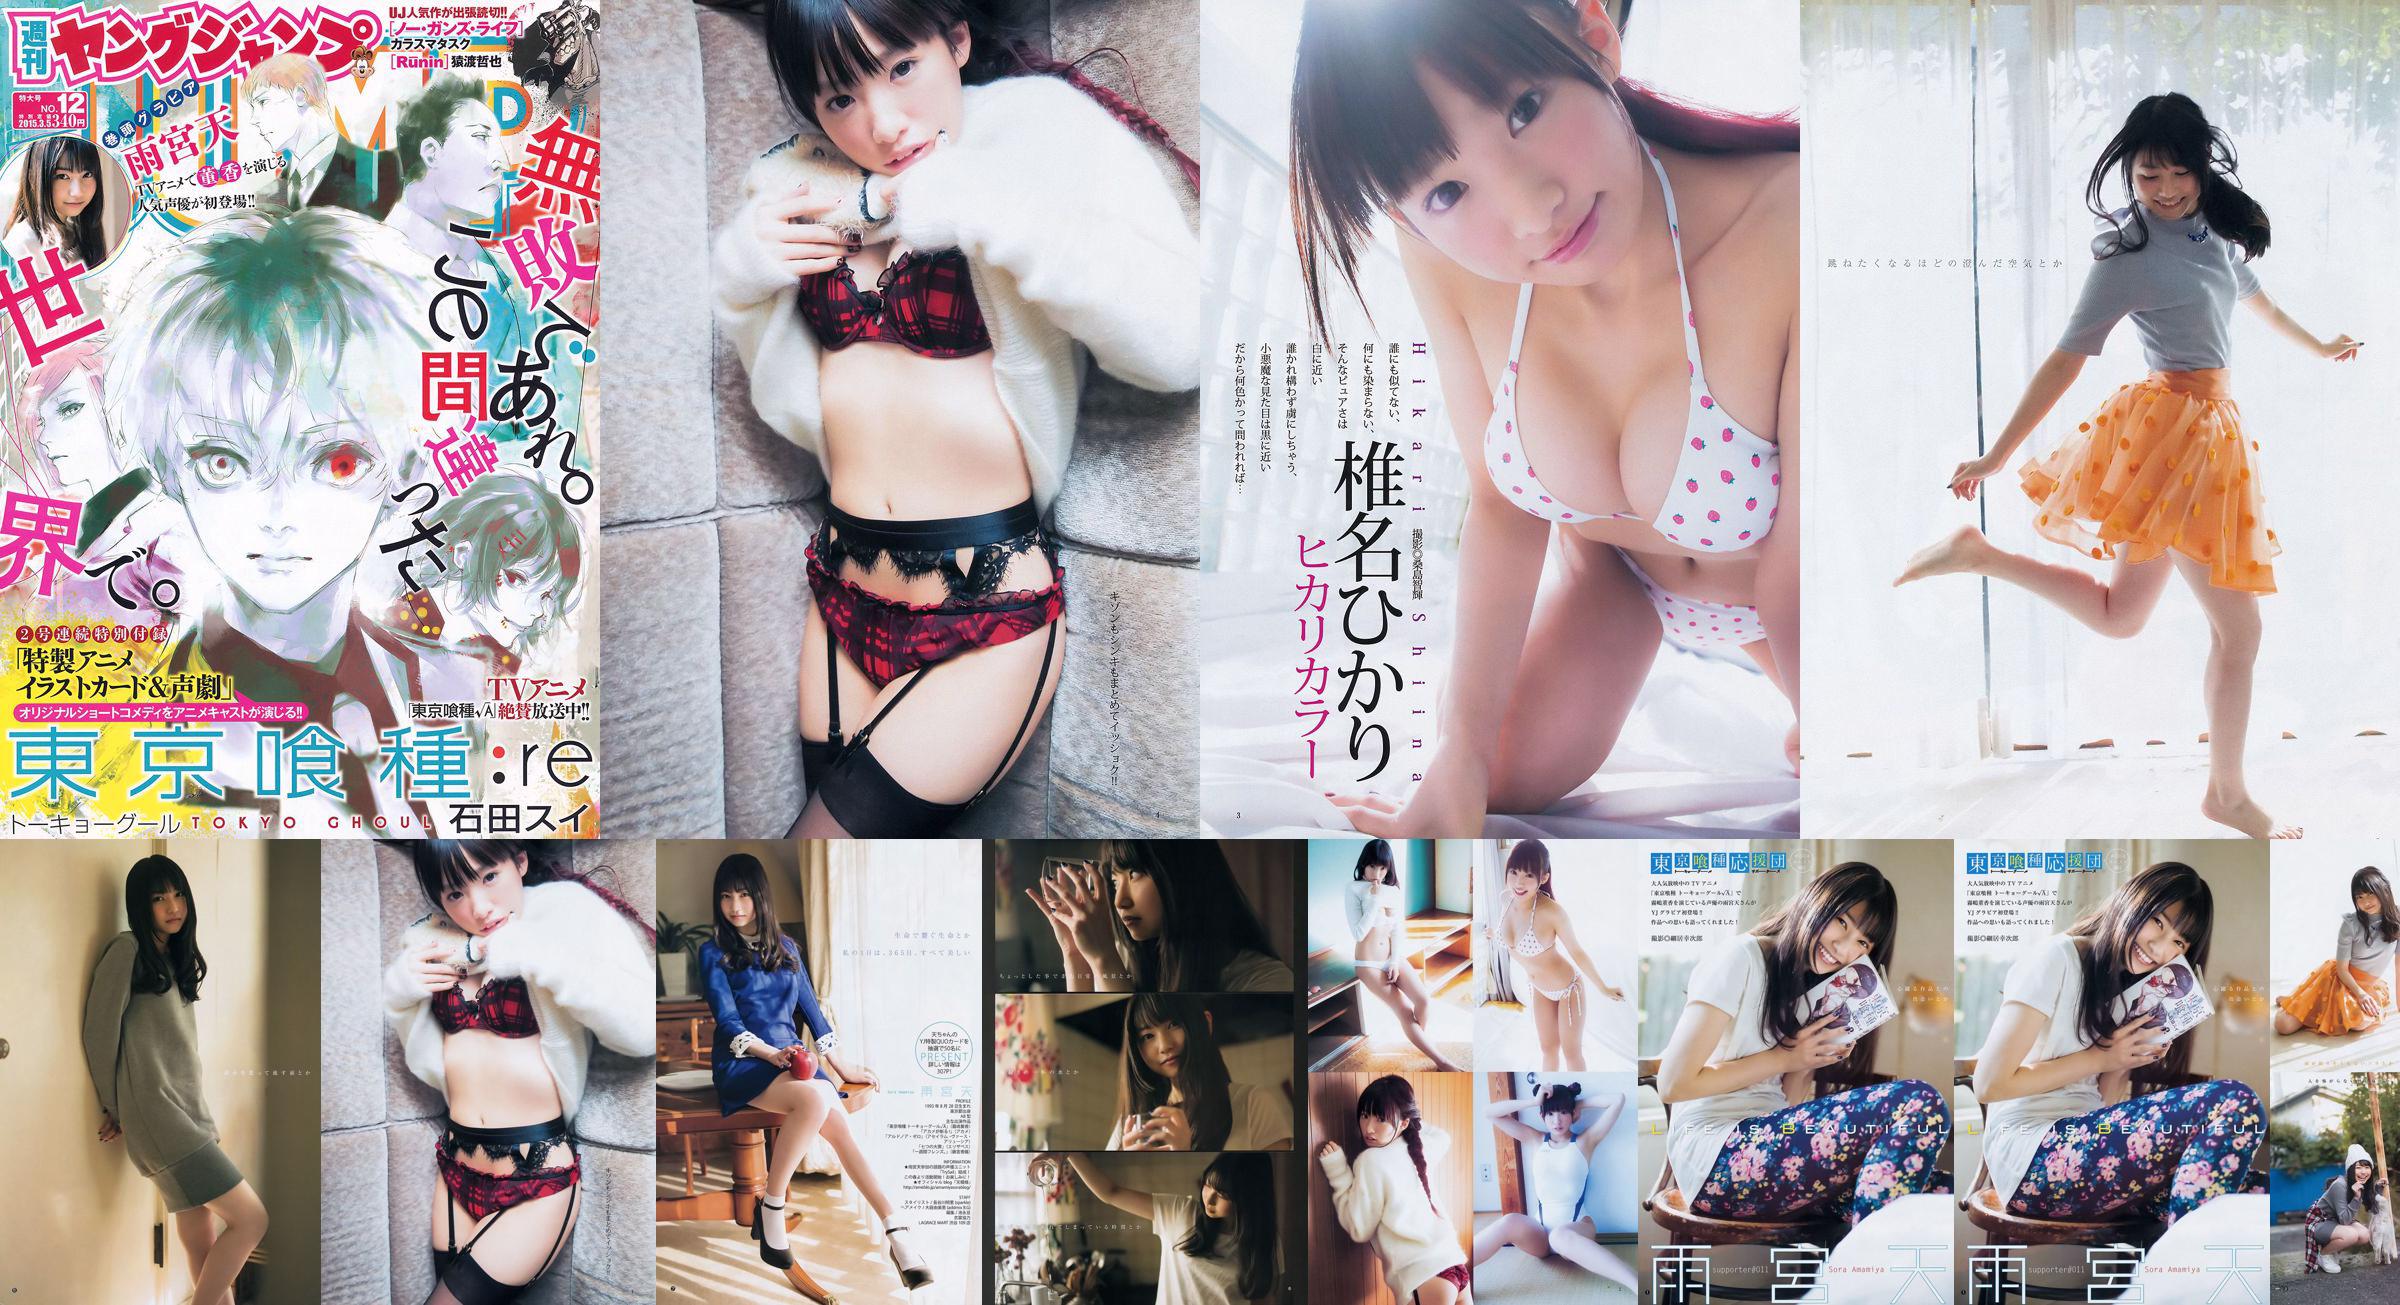 Amamiya Tian Shiina ひかり [Weekly Young Jump] 2015 No.12 Photo Magazine No.3fb266 Pagina 1